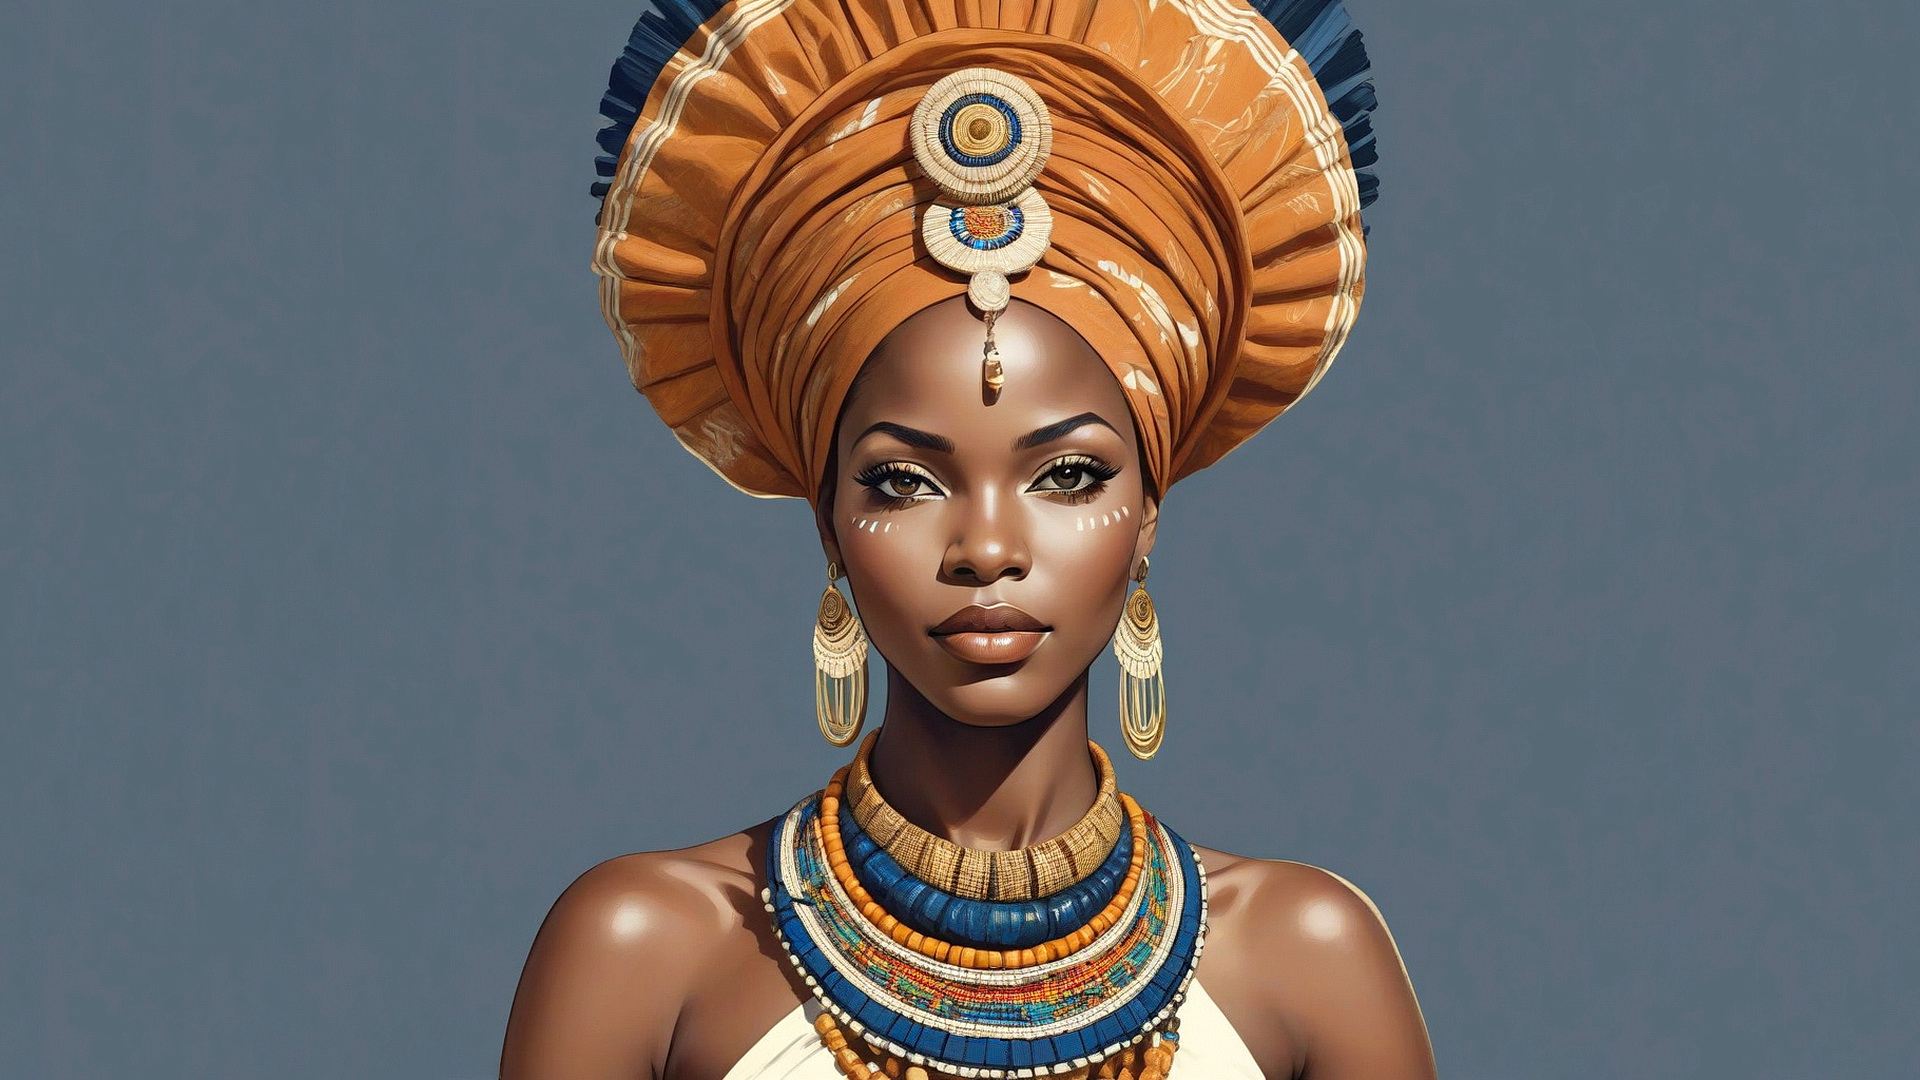 Бесплатное фото Портрет африканской женщины на сером фоне